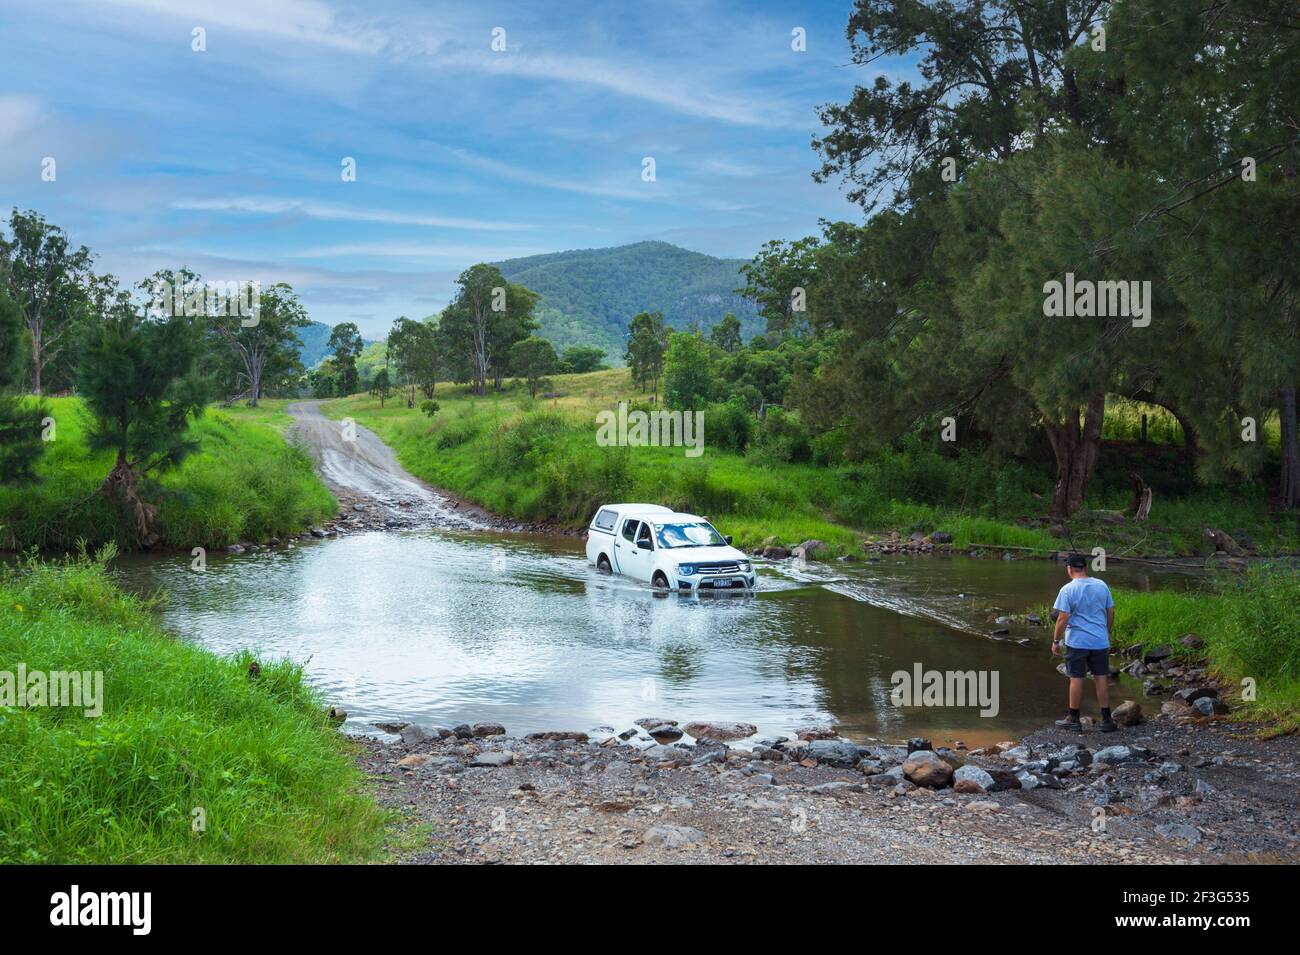 Vehículo 4x4 cruzando el río Condamine en Killarney, un lugar popular para conducir fuera de carretera, Queensland, QLD, Australia Foto de stock